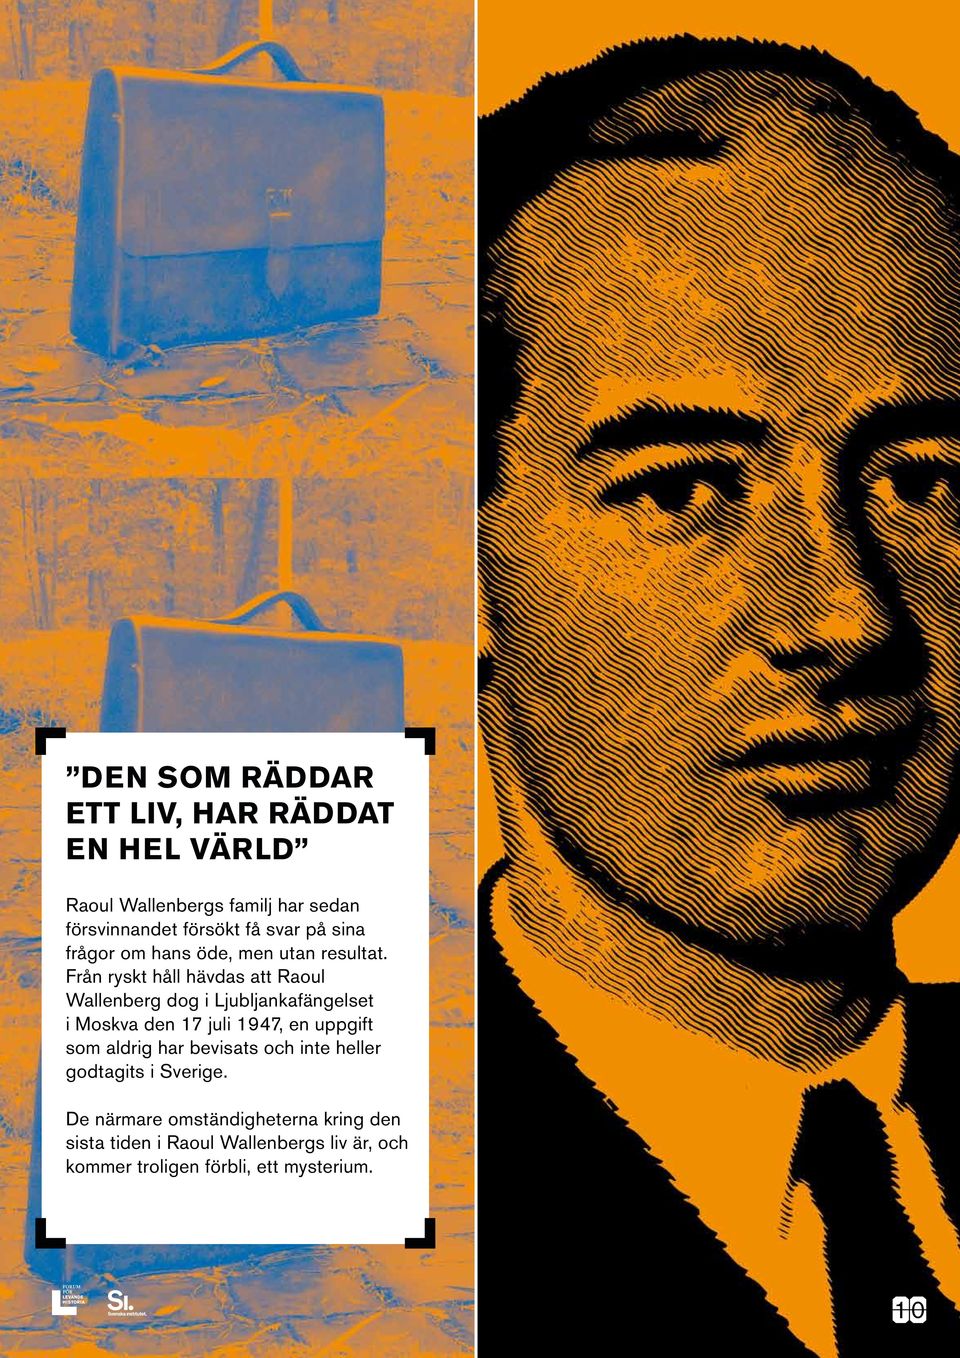 Från ryskt håll hävdas att Raoul Wallenberg dog i Ljubljankafängelset i Moskva den 17 juli 1947, en uppgift som